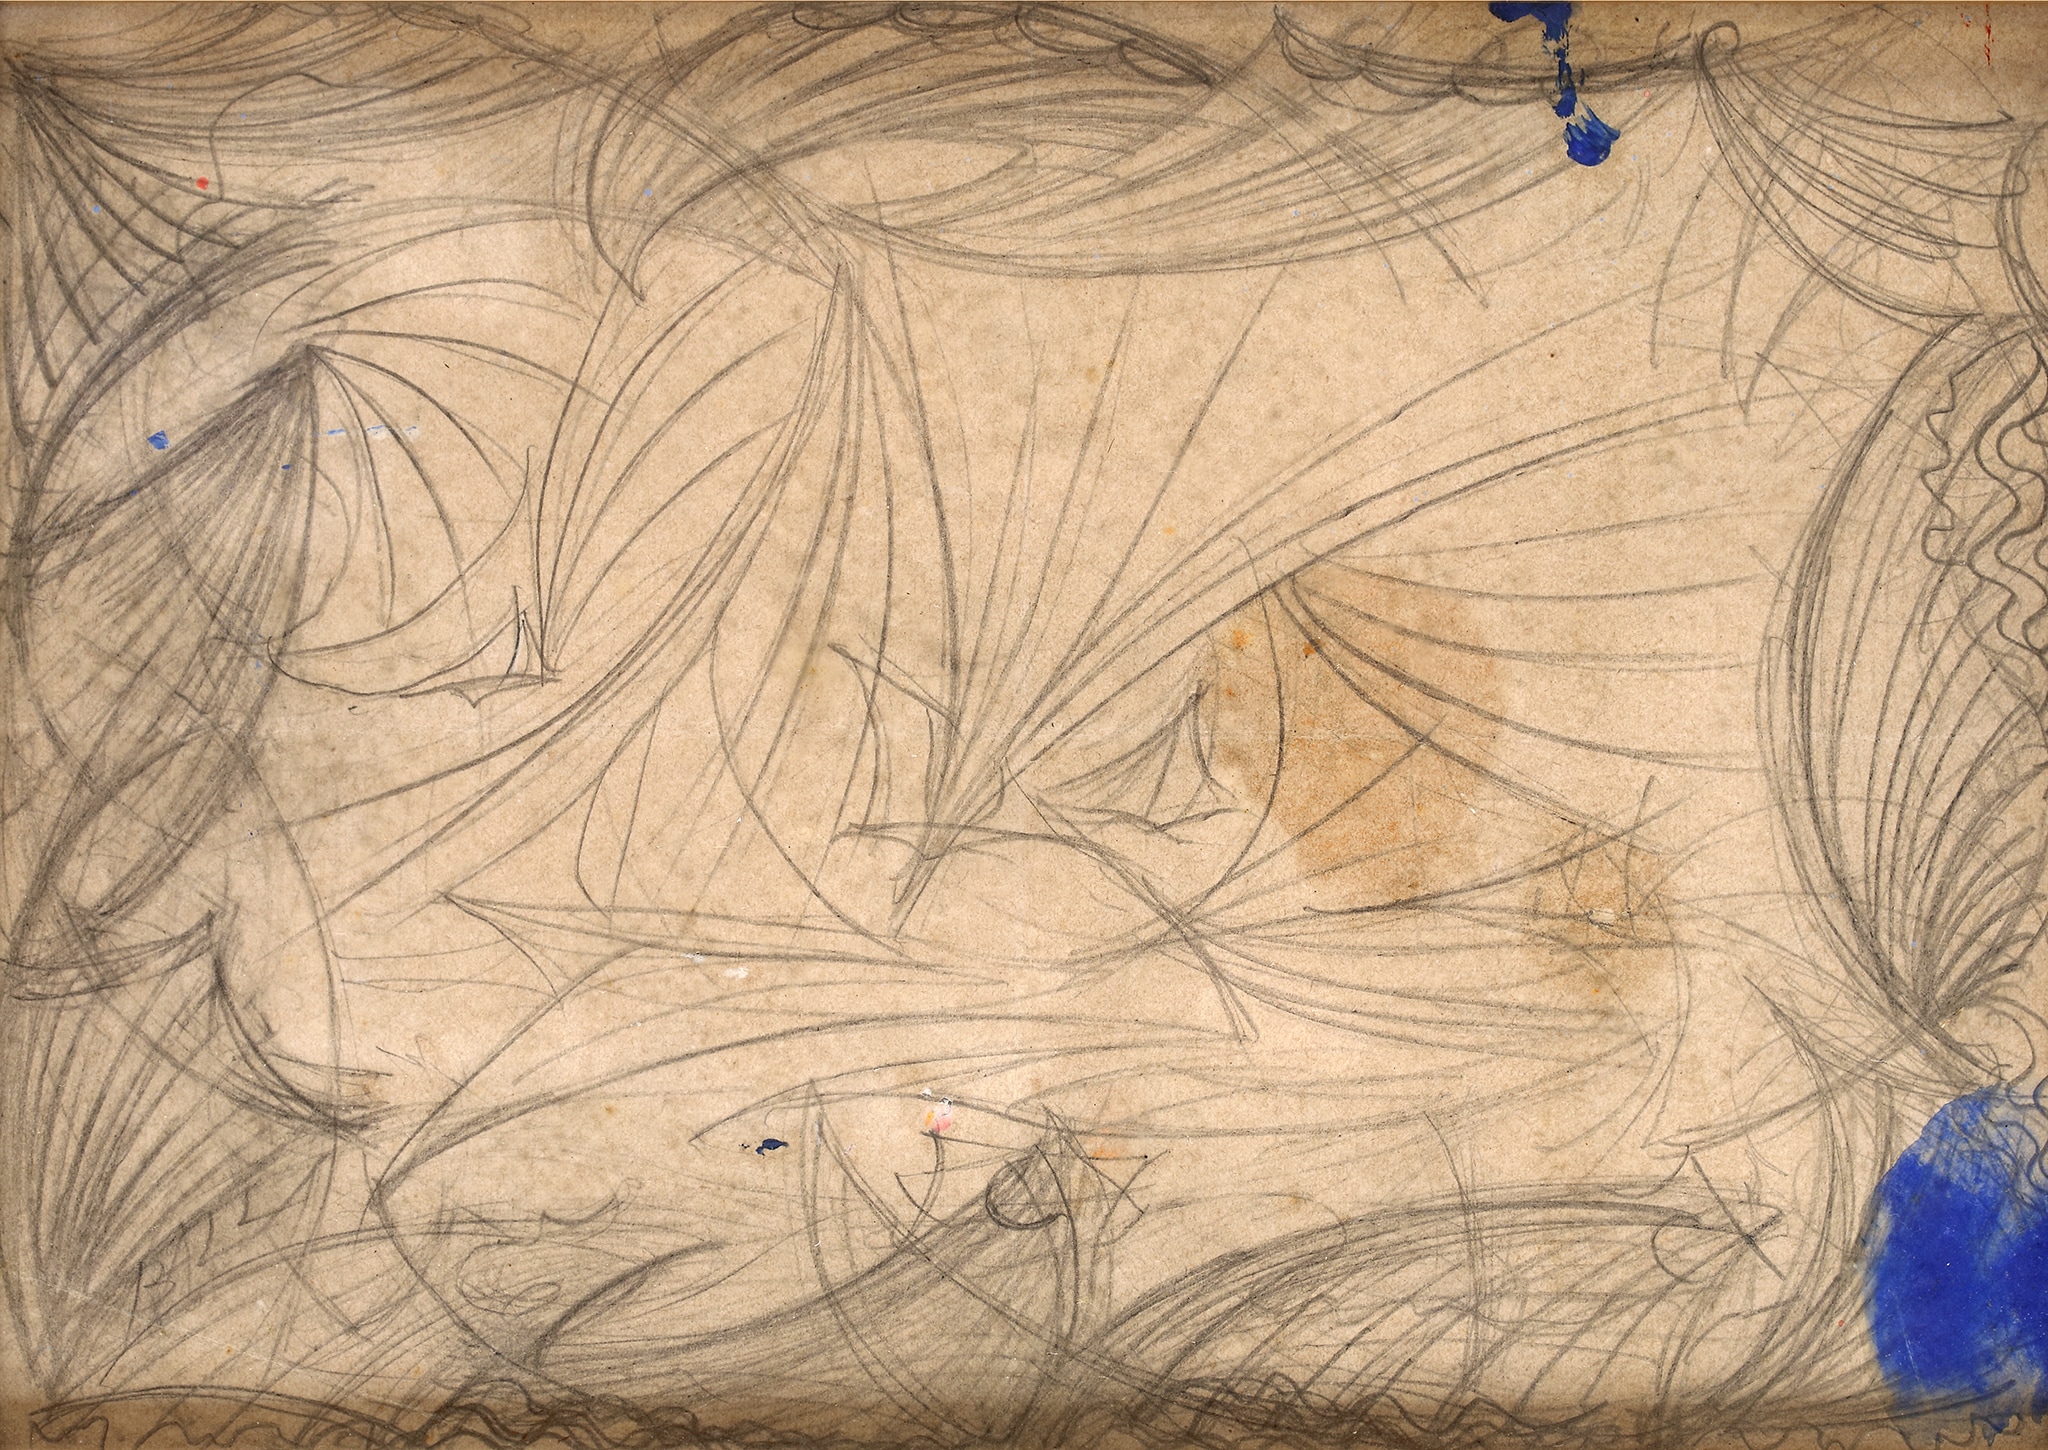 Giacomo Balla "Mare velivolato - studio" 1925 ca. Matita su carta, 185 x 270 mm. L’opera è un primo studio preparatorio per il grande dipinto omonimo su tela d’arazzo esposto all’Exposition Internationale des Arts Decoratifs a Parigi nel giugno 1925. 